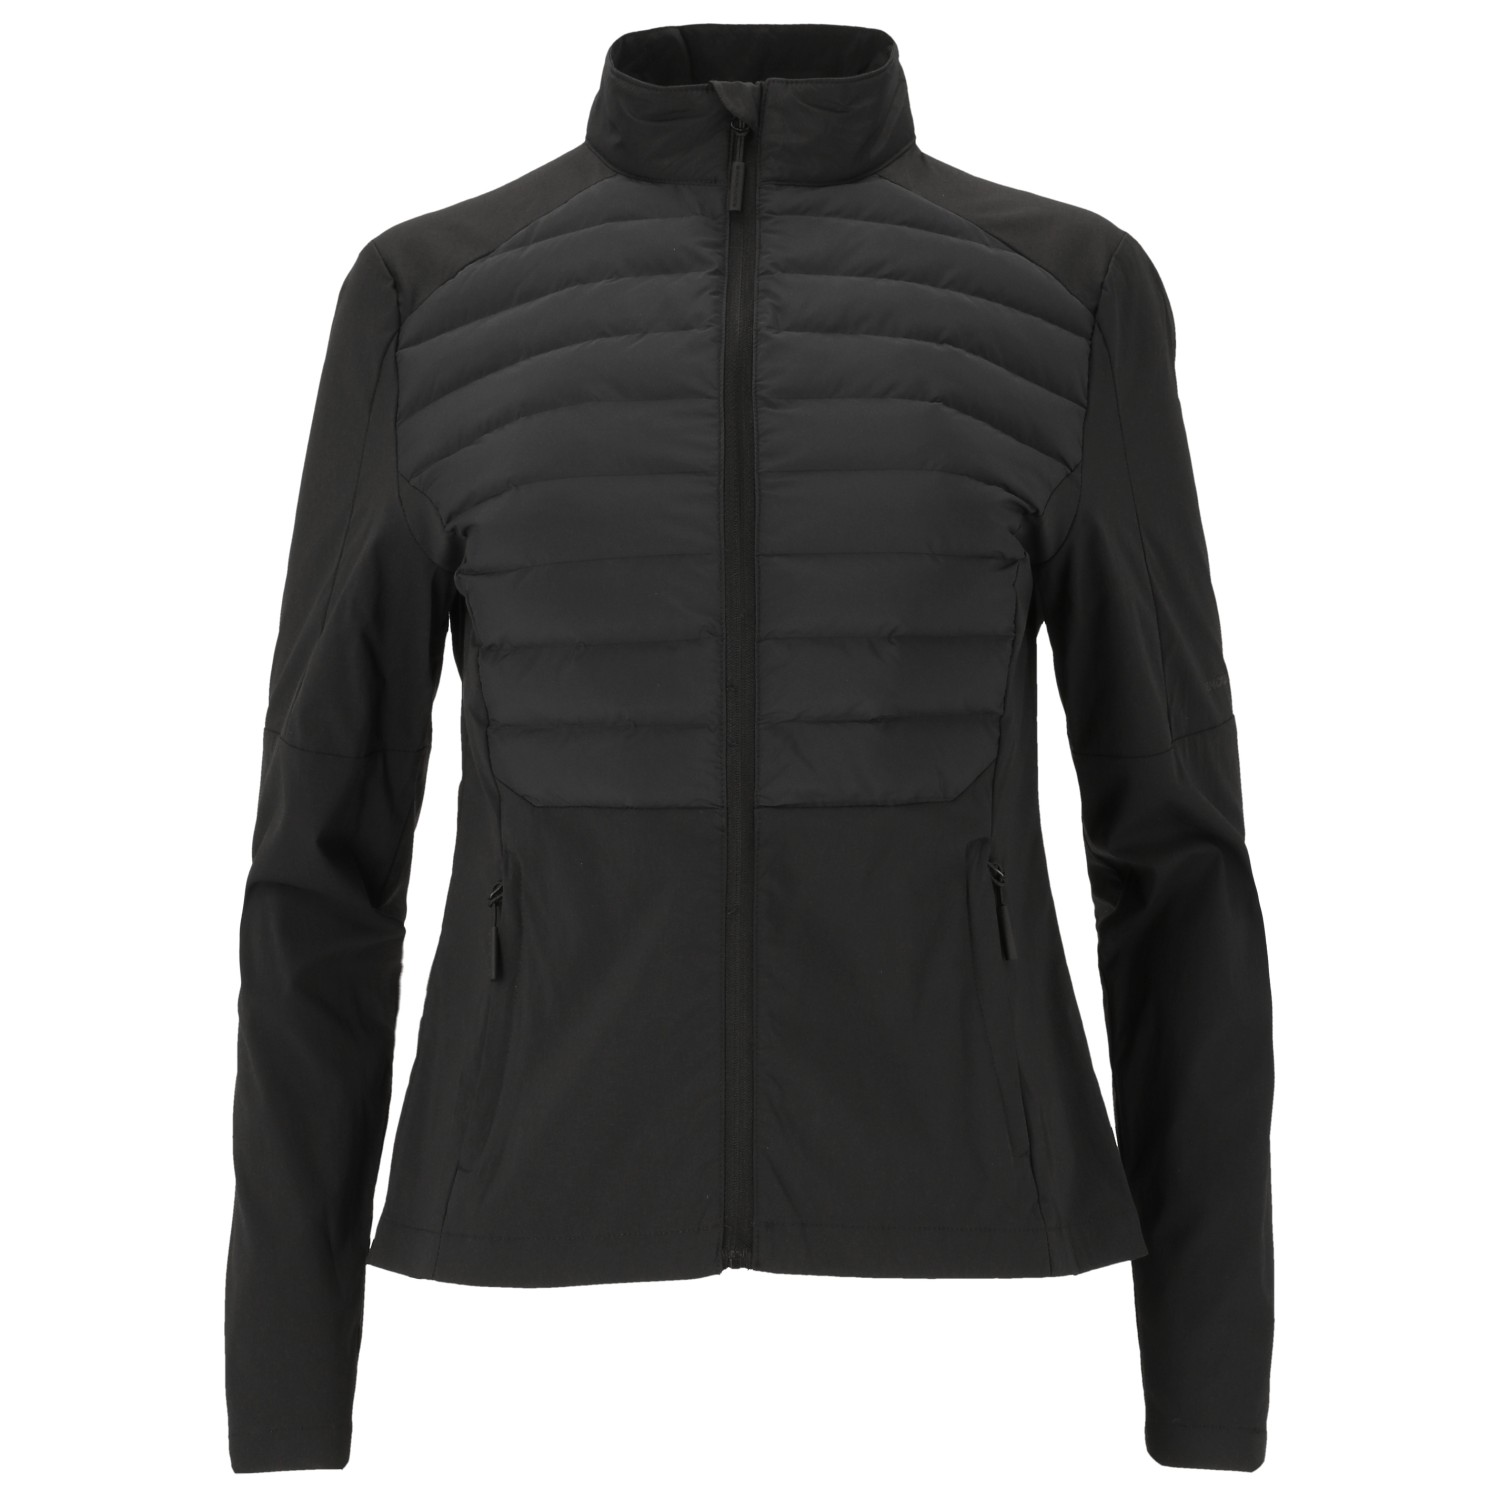 Куртка из синтетического волокна Endurance Women's Beistyla Hybrid – Primaloft, черный